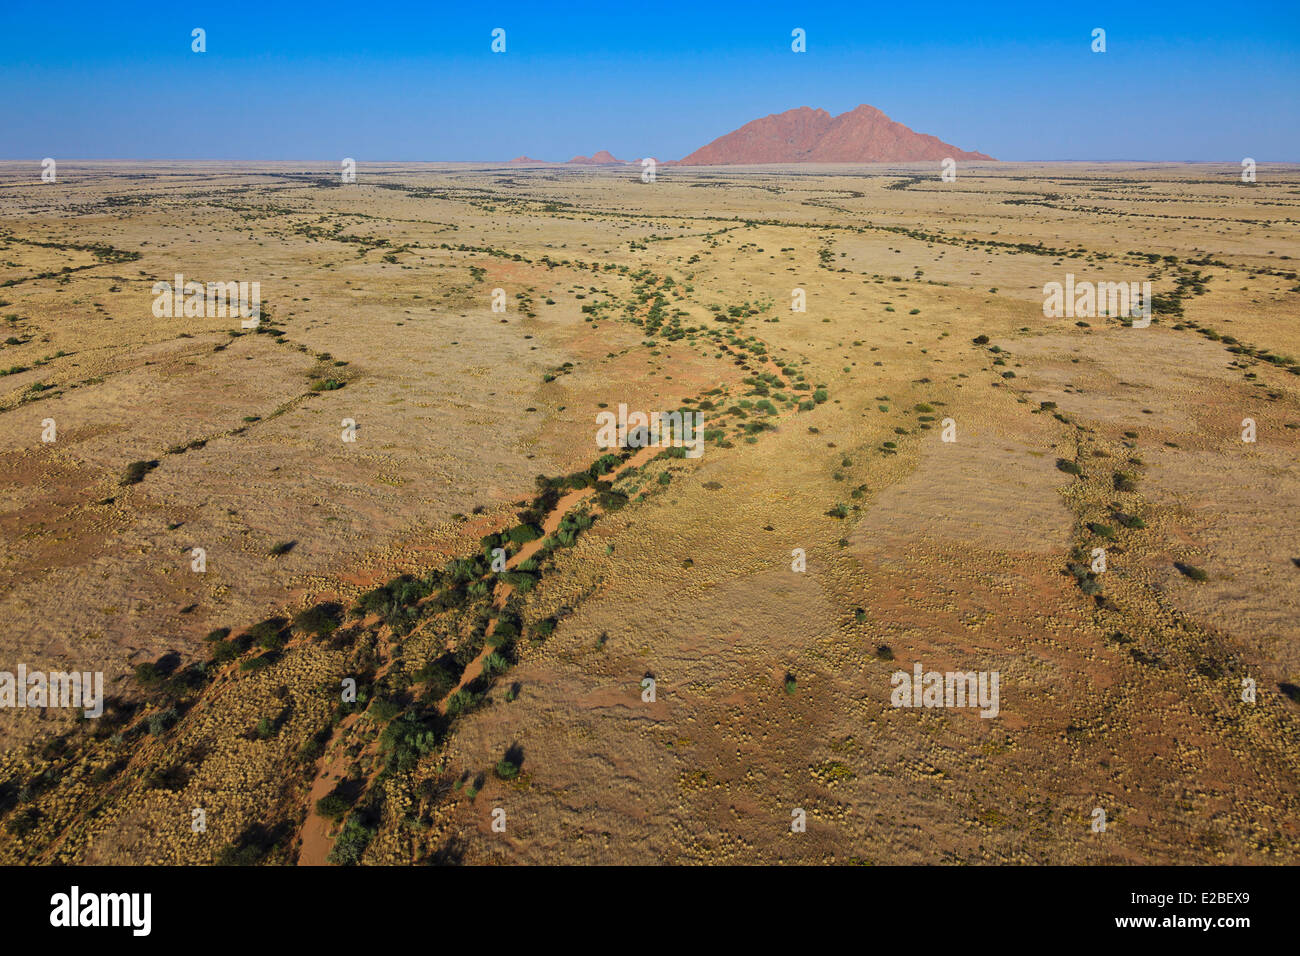 Namibia, Erongo Region, Damaraland, the Spitzkoppe or Kleine Spitzkop, granite mountain in the Namib Desert (aerial view) Stock Photo